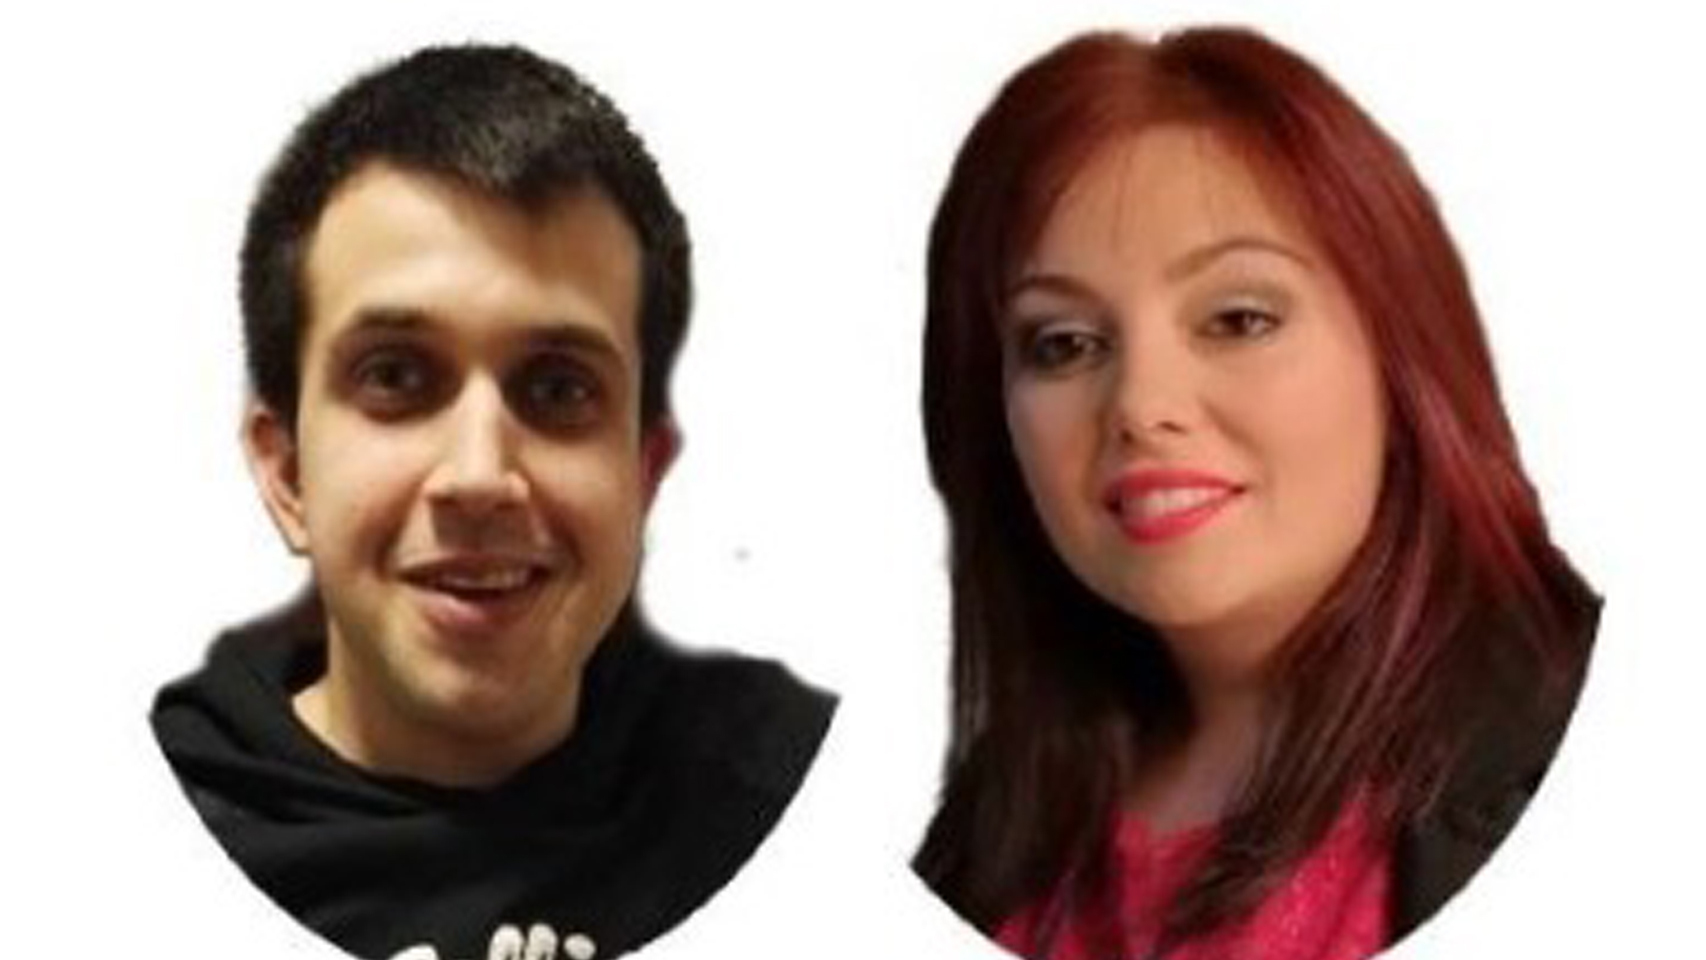 Abraham Muñiz y Sara Lampón, la pareja que esperaba dos hijos y falleció a causa de un accidente de tráfico en Ribeira.